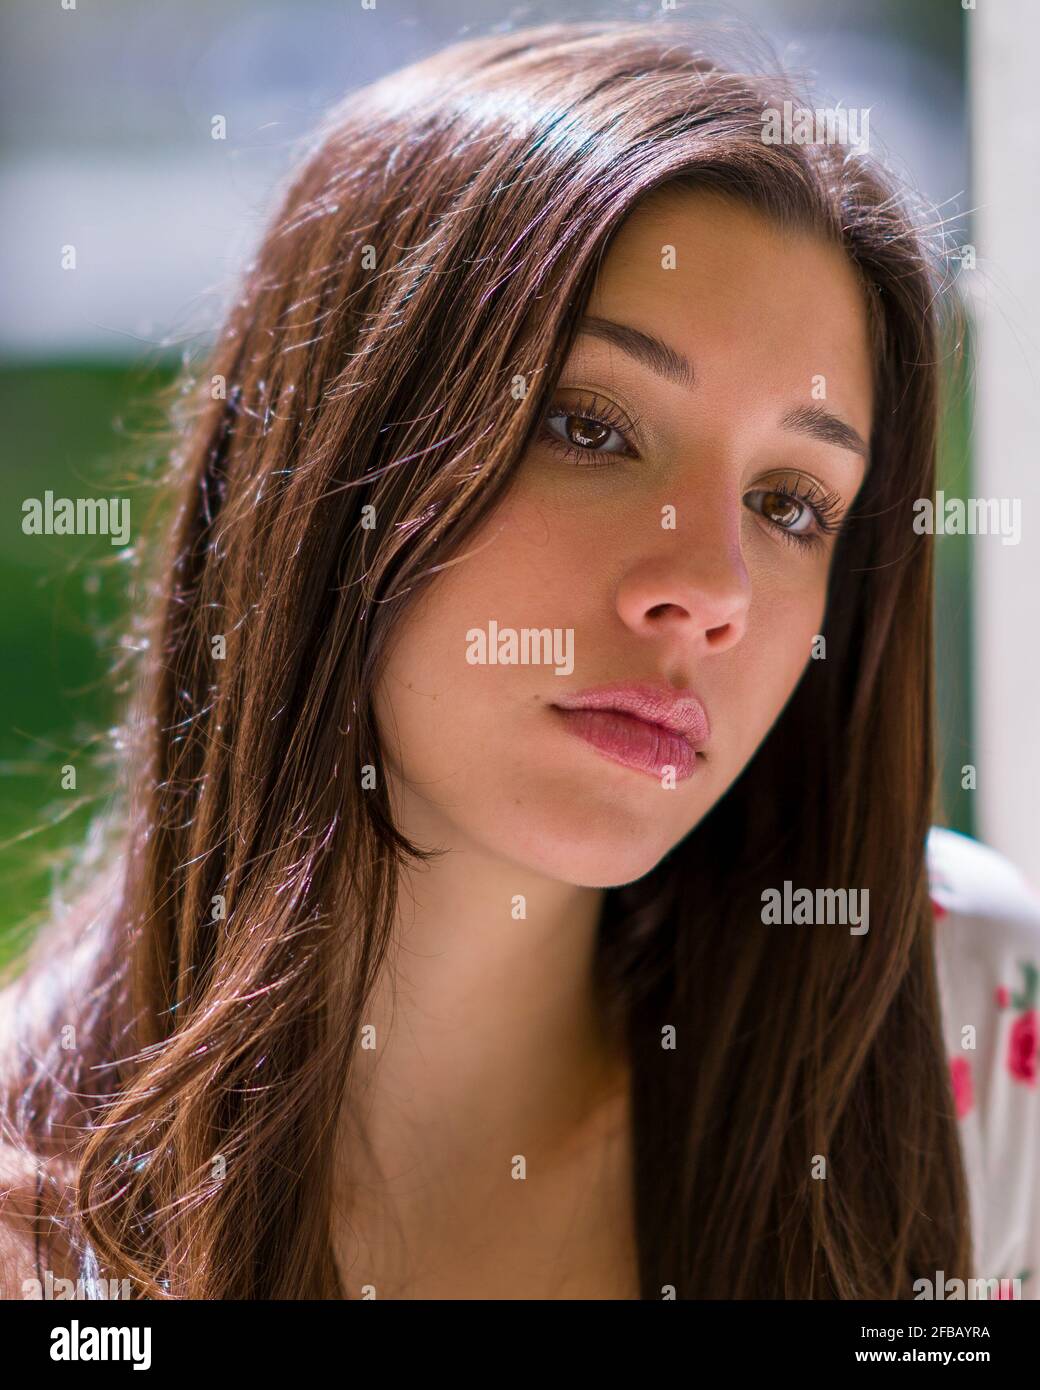 Traurig aussehende Teenager Latina Mädchen in einem Park Einstellung Stockfoto